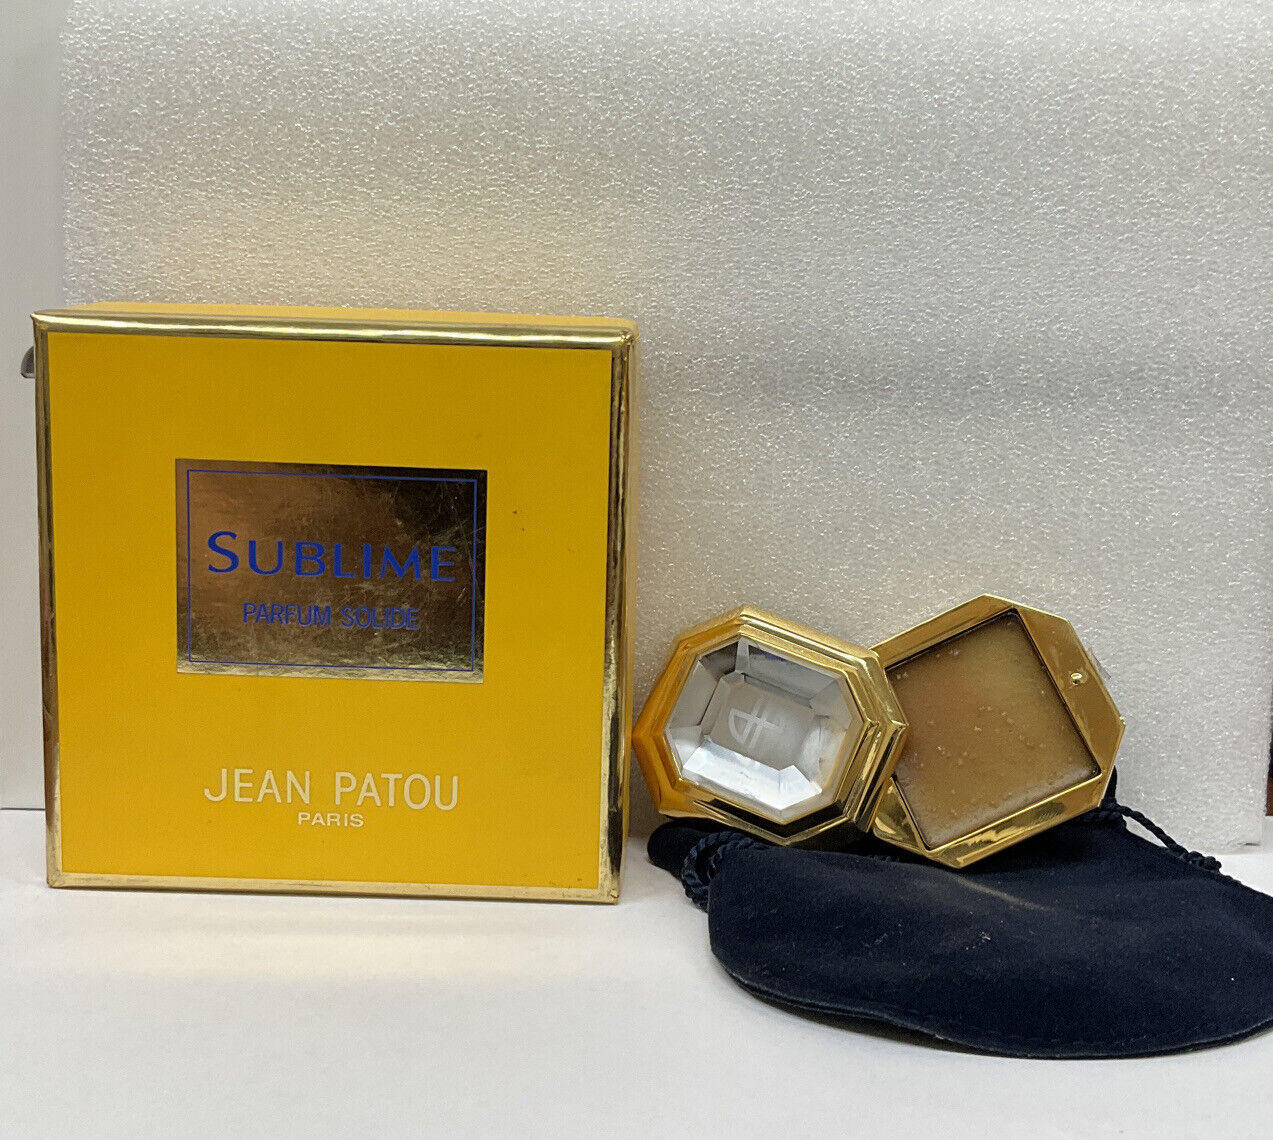 SUBLIME by Jean Patou 2.8 g/ 0.09 oz Parfum Solid vintage 